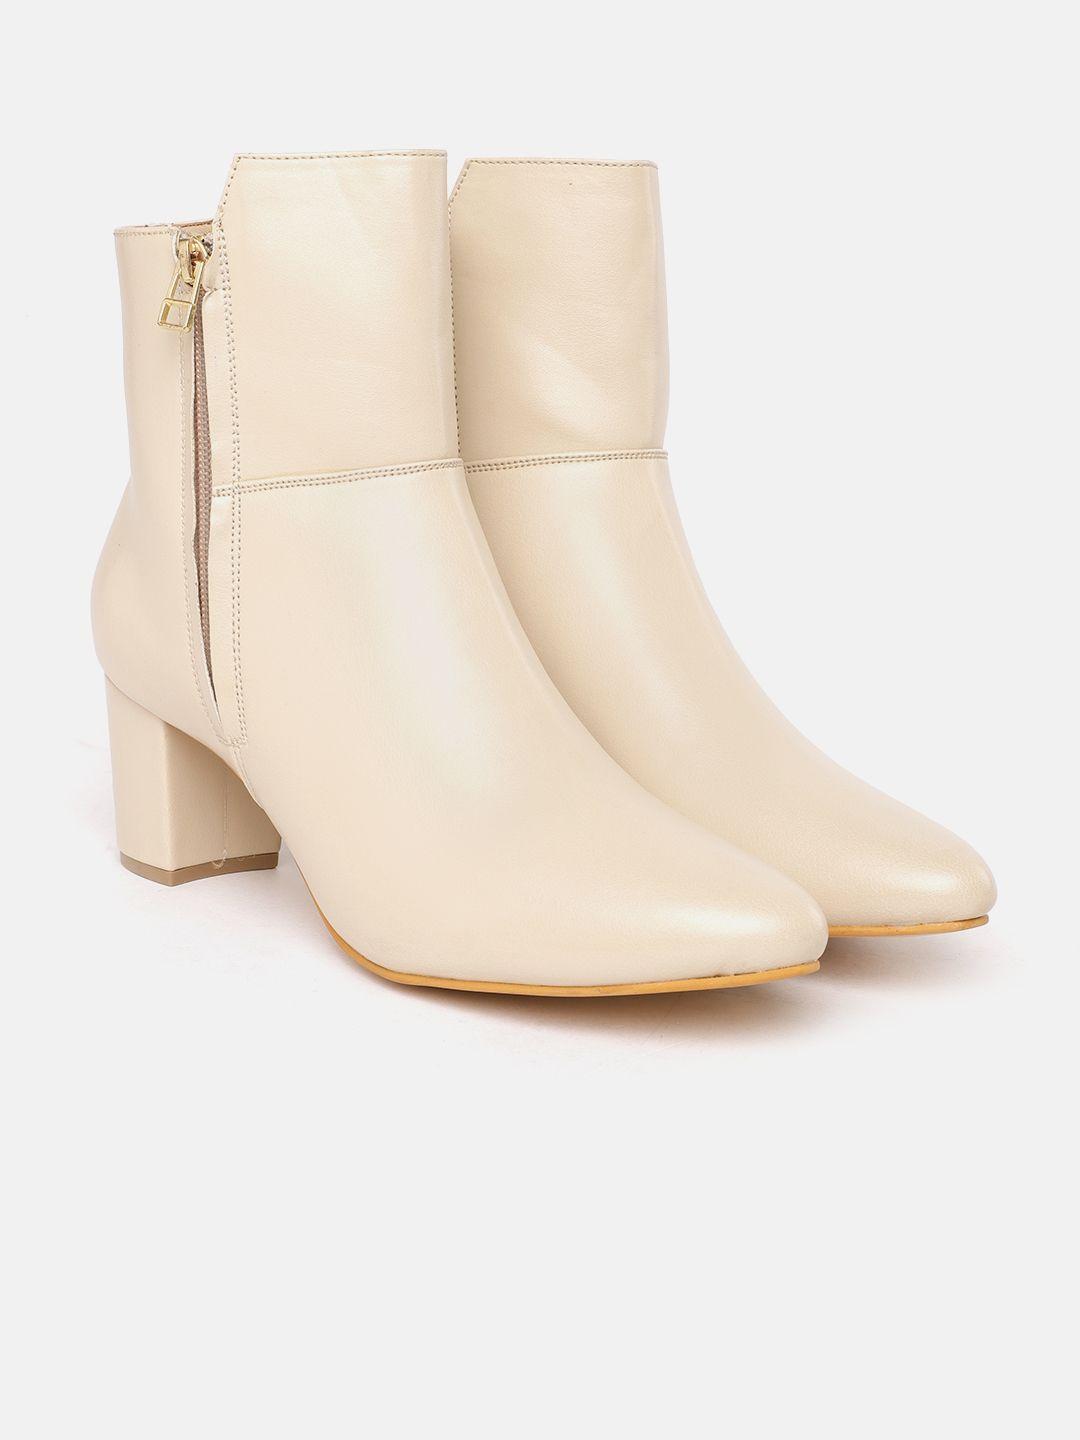 mast & harbour women off white solid mid-top block heel regular boots